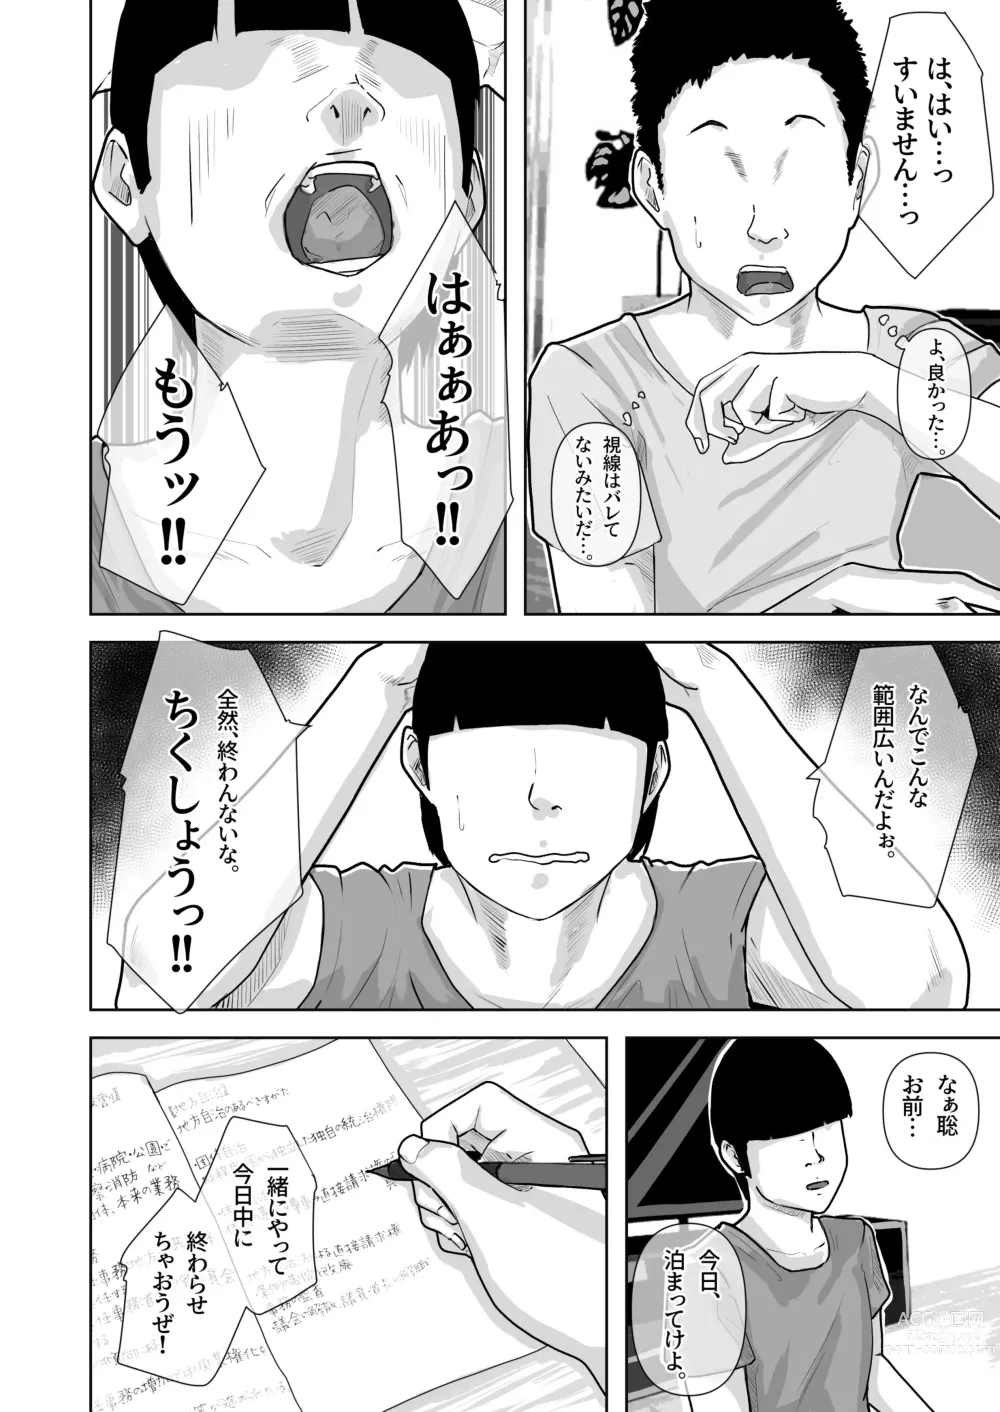 Page 7 of doujinshi Tomodachi no Okaa-san o Okazu ni Suru.